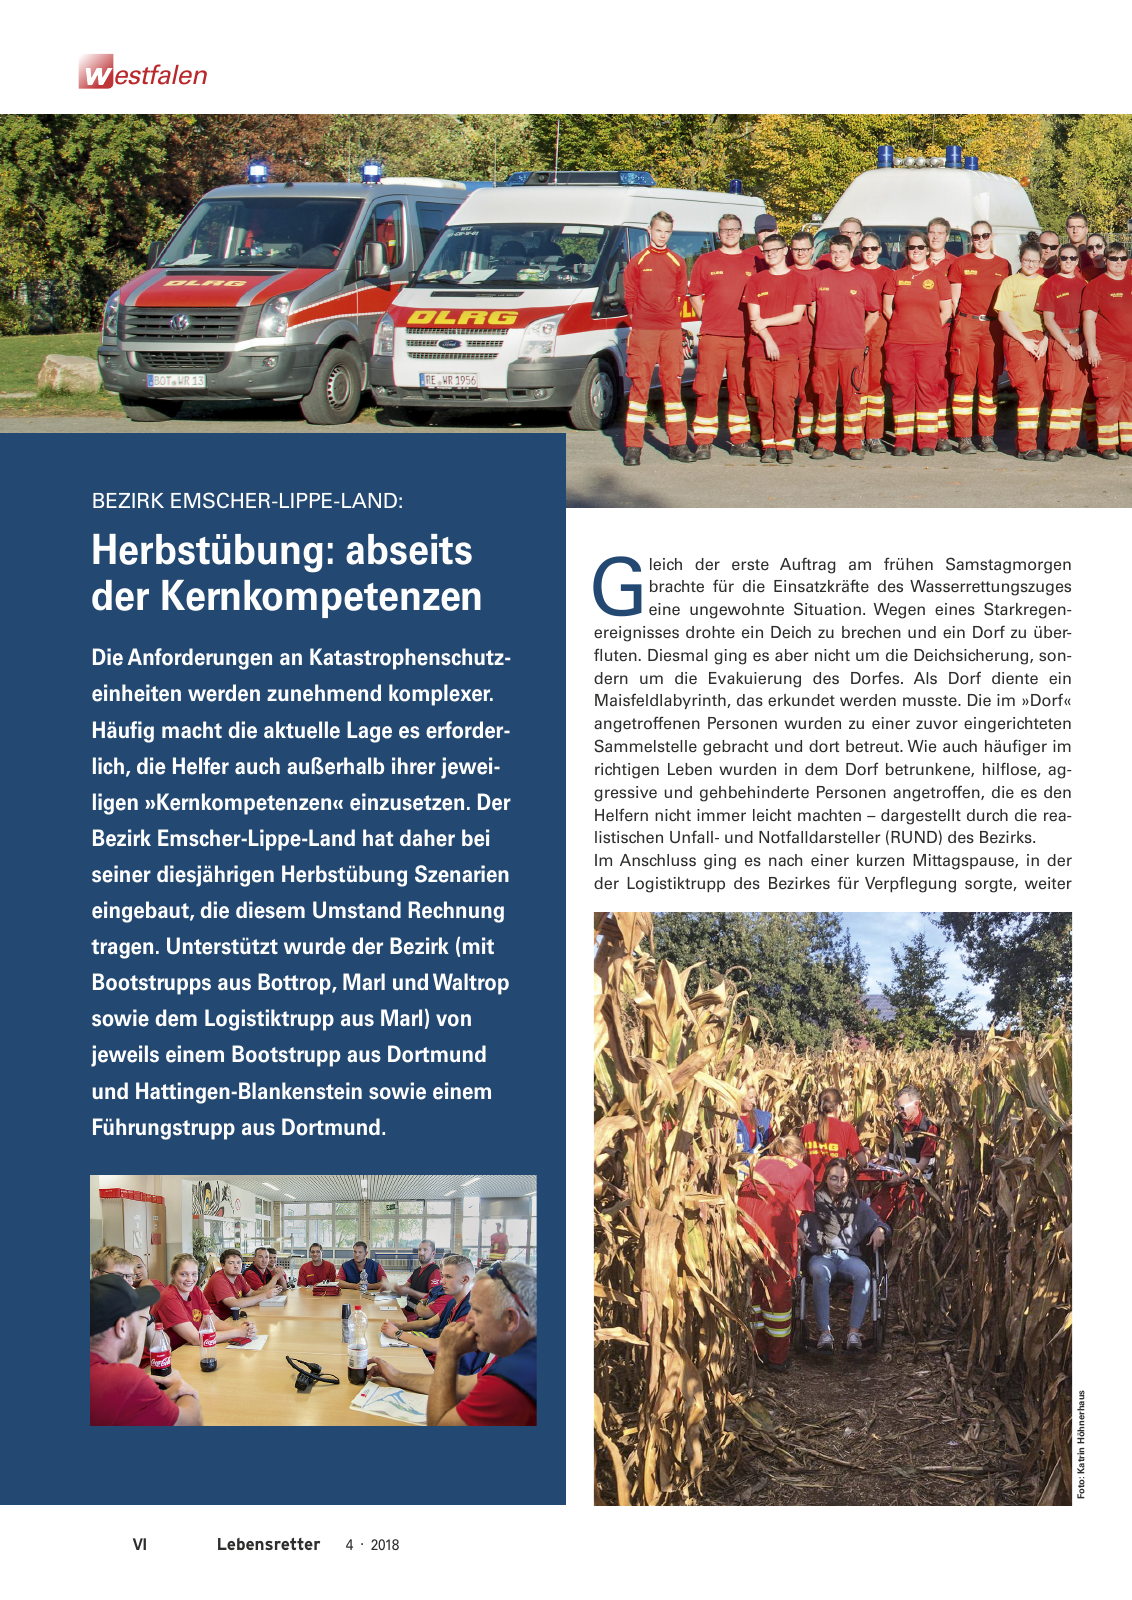 Vorschau Lebensretter 4/2018 - Regionalausgabe Westfalen Seite 8